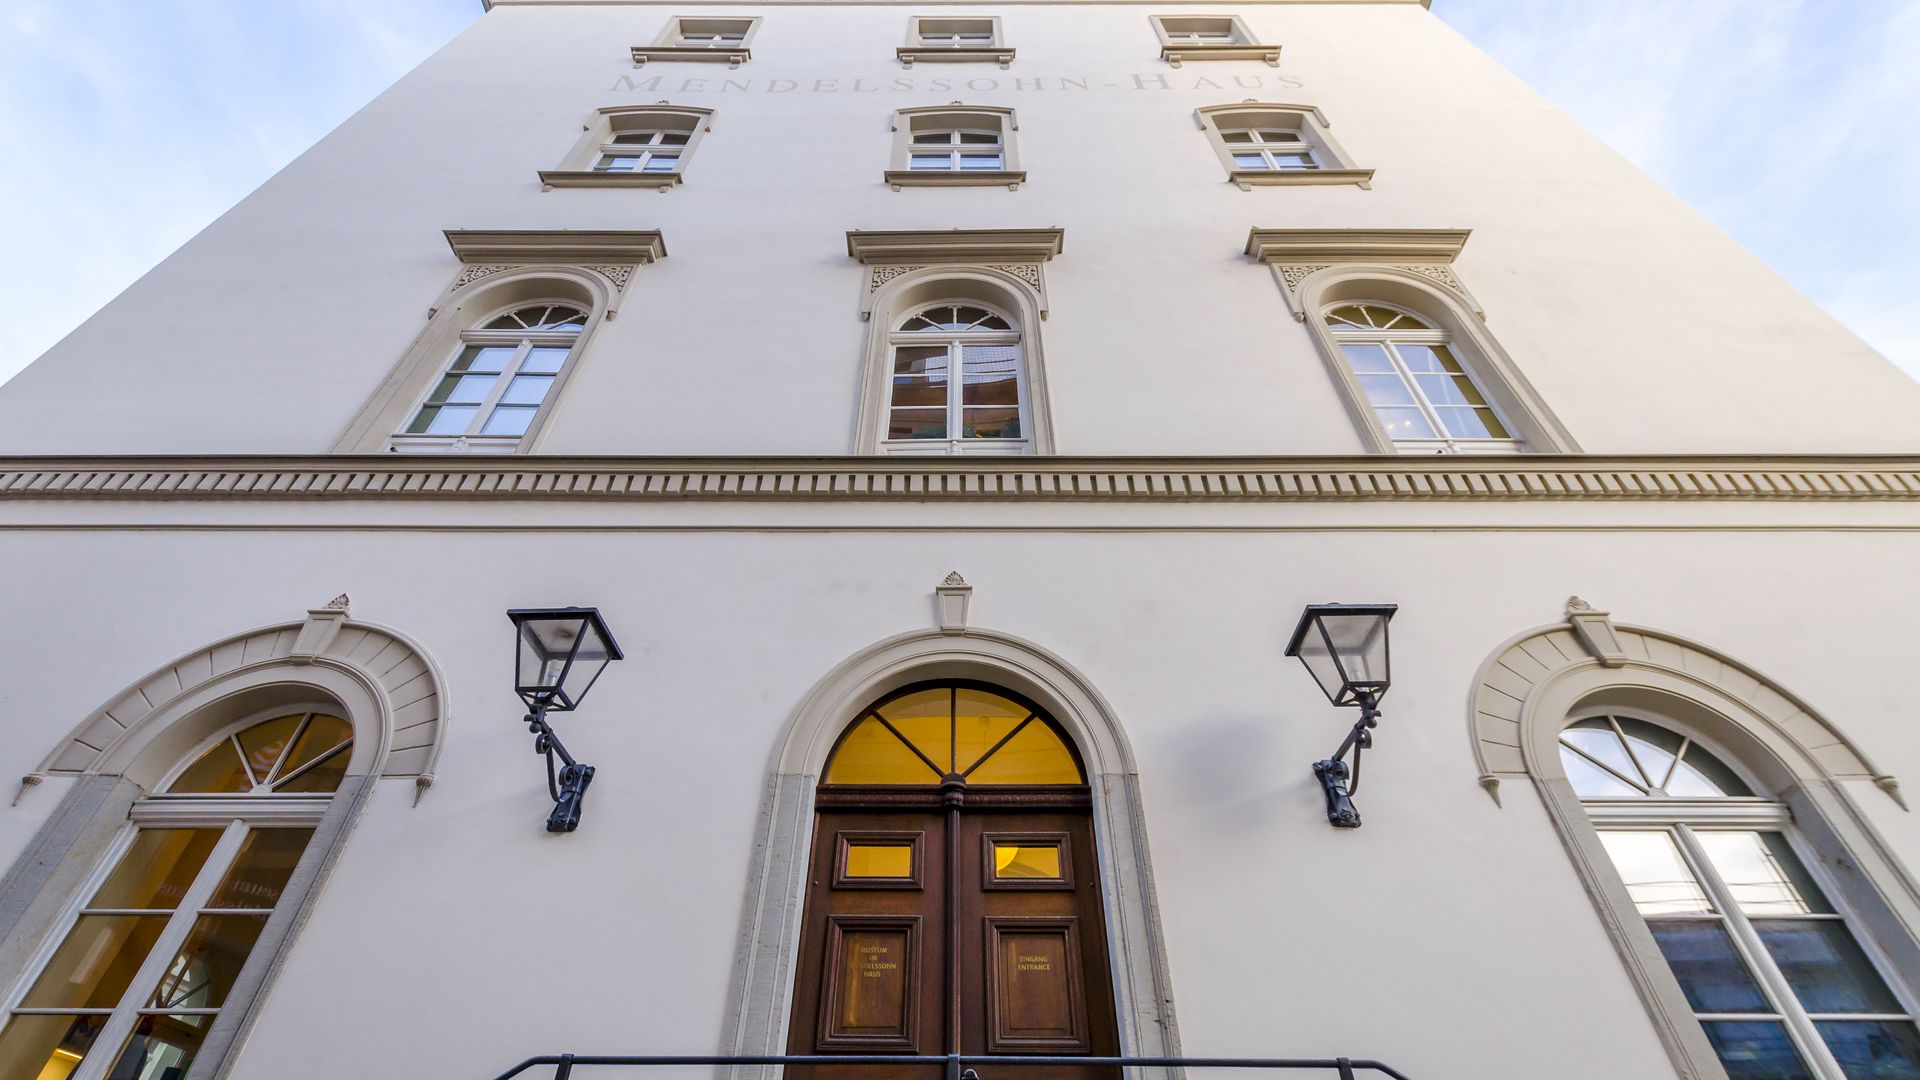 Pohled na průčelí Mendelssohnova domu, který je jednou zastávkou na hudební stezce "Notenspur" města hudby Lipska a v němž se nachází muzeum o životě a díle Felixe Mendelssohna Bartholdyho, kulturní zařízení, pamětihodnosti